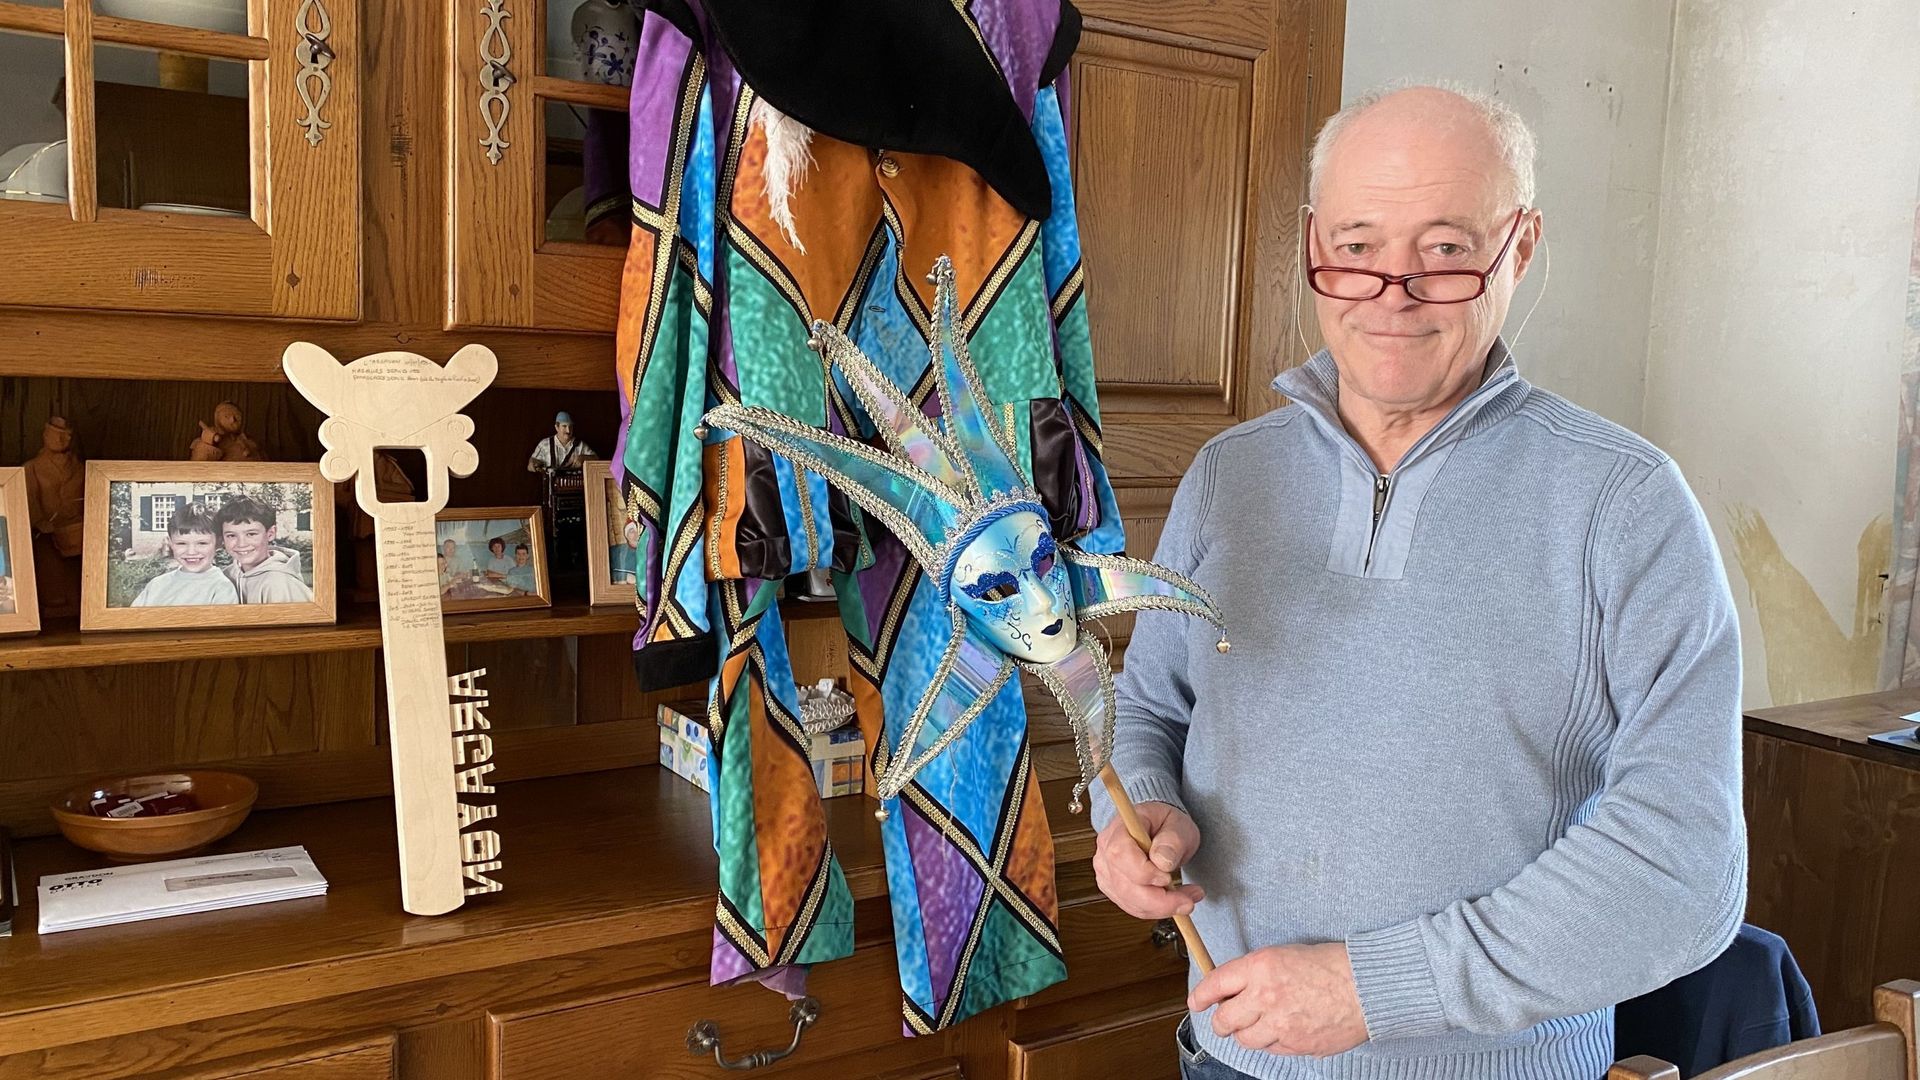 Daniel Heymans, le président de la société des Gilles de l’Argayon, a opté pour un costume de fantaisie ce dimanche.